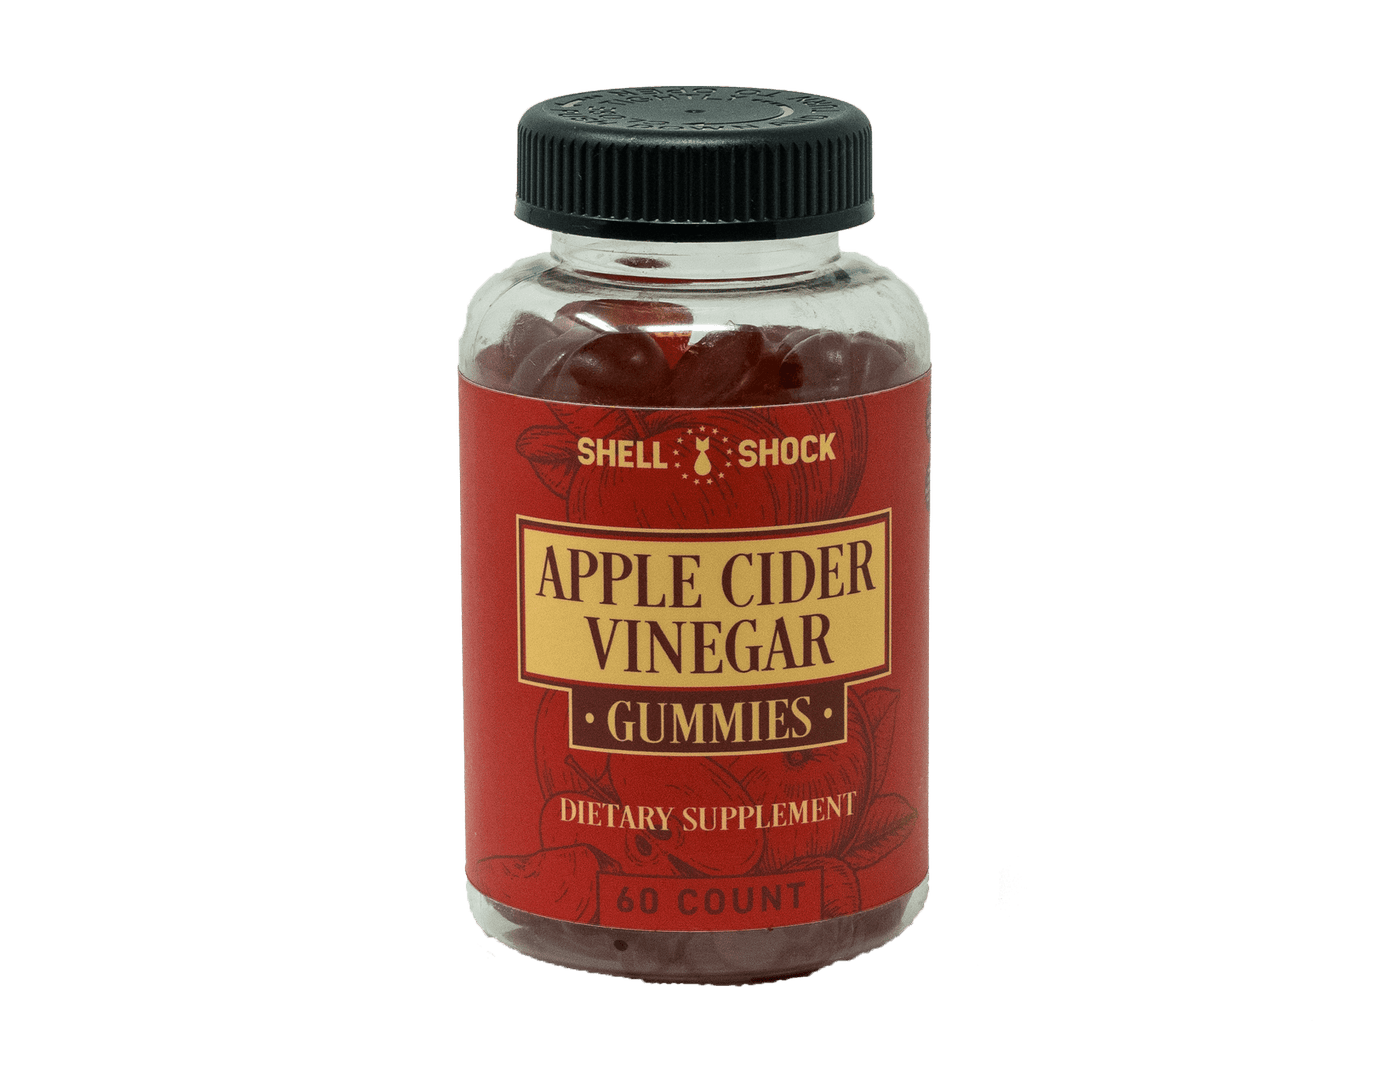 Shell Shock Apple Cider Vinegar Gummies 60 count bottle